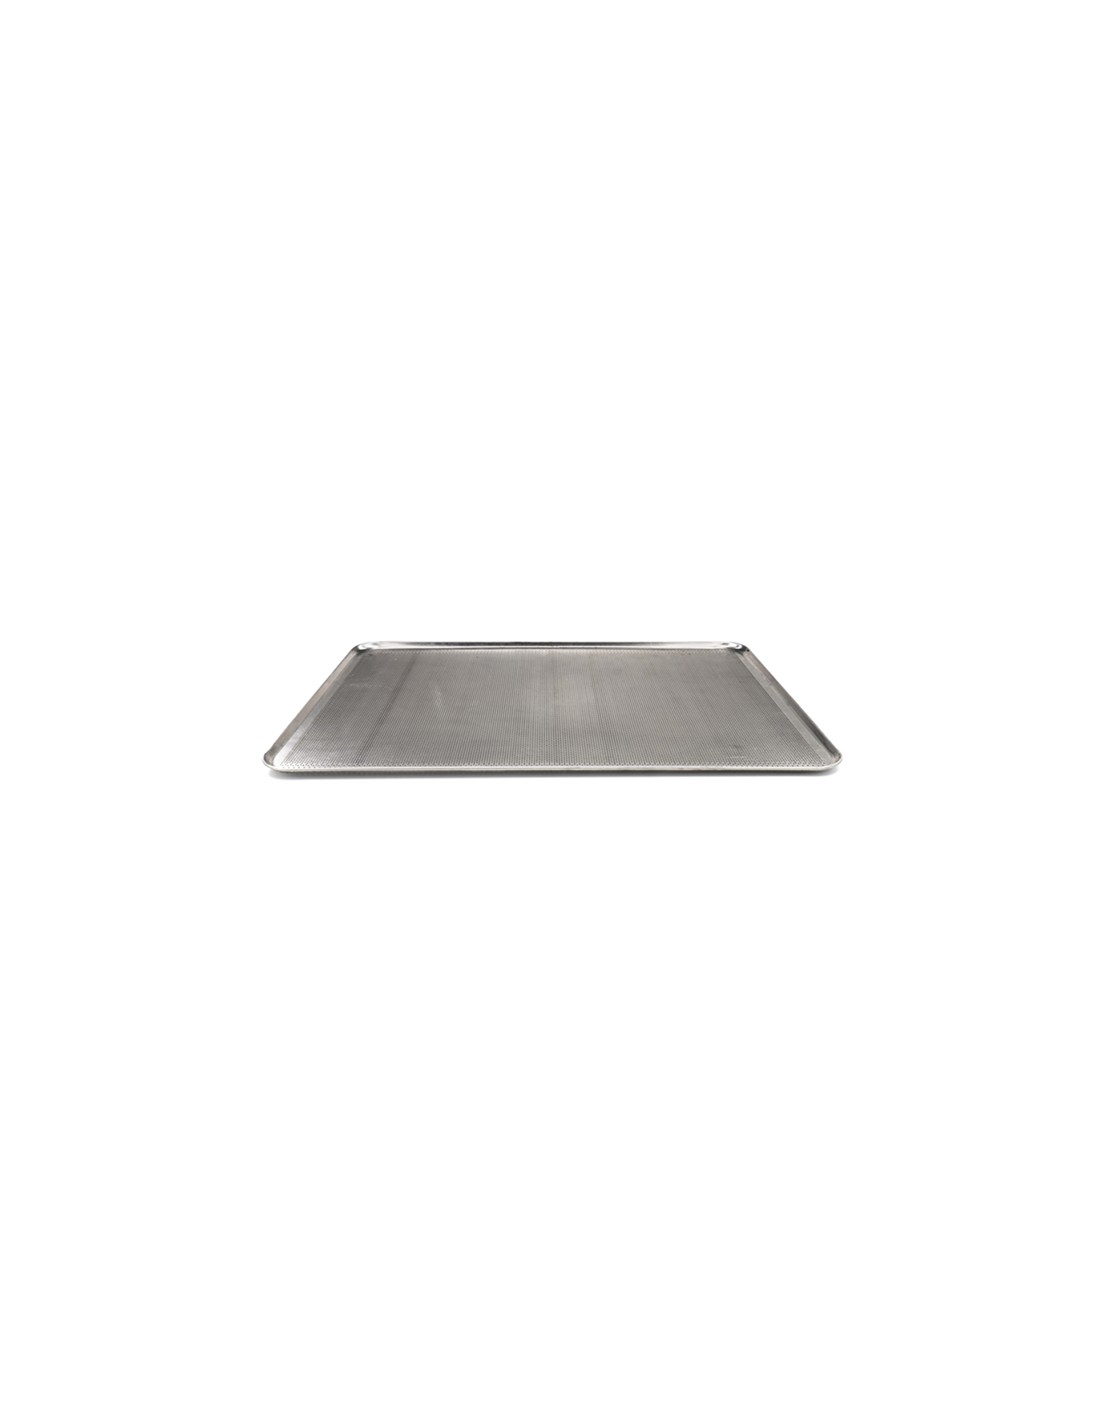 Handle cm 60 × 40 x 2 h perforated aluminum.